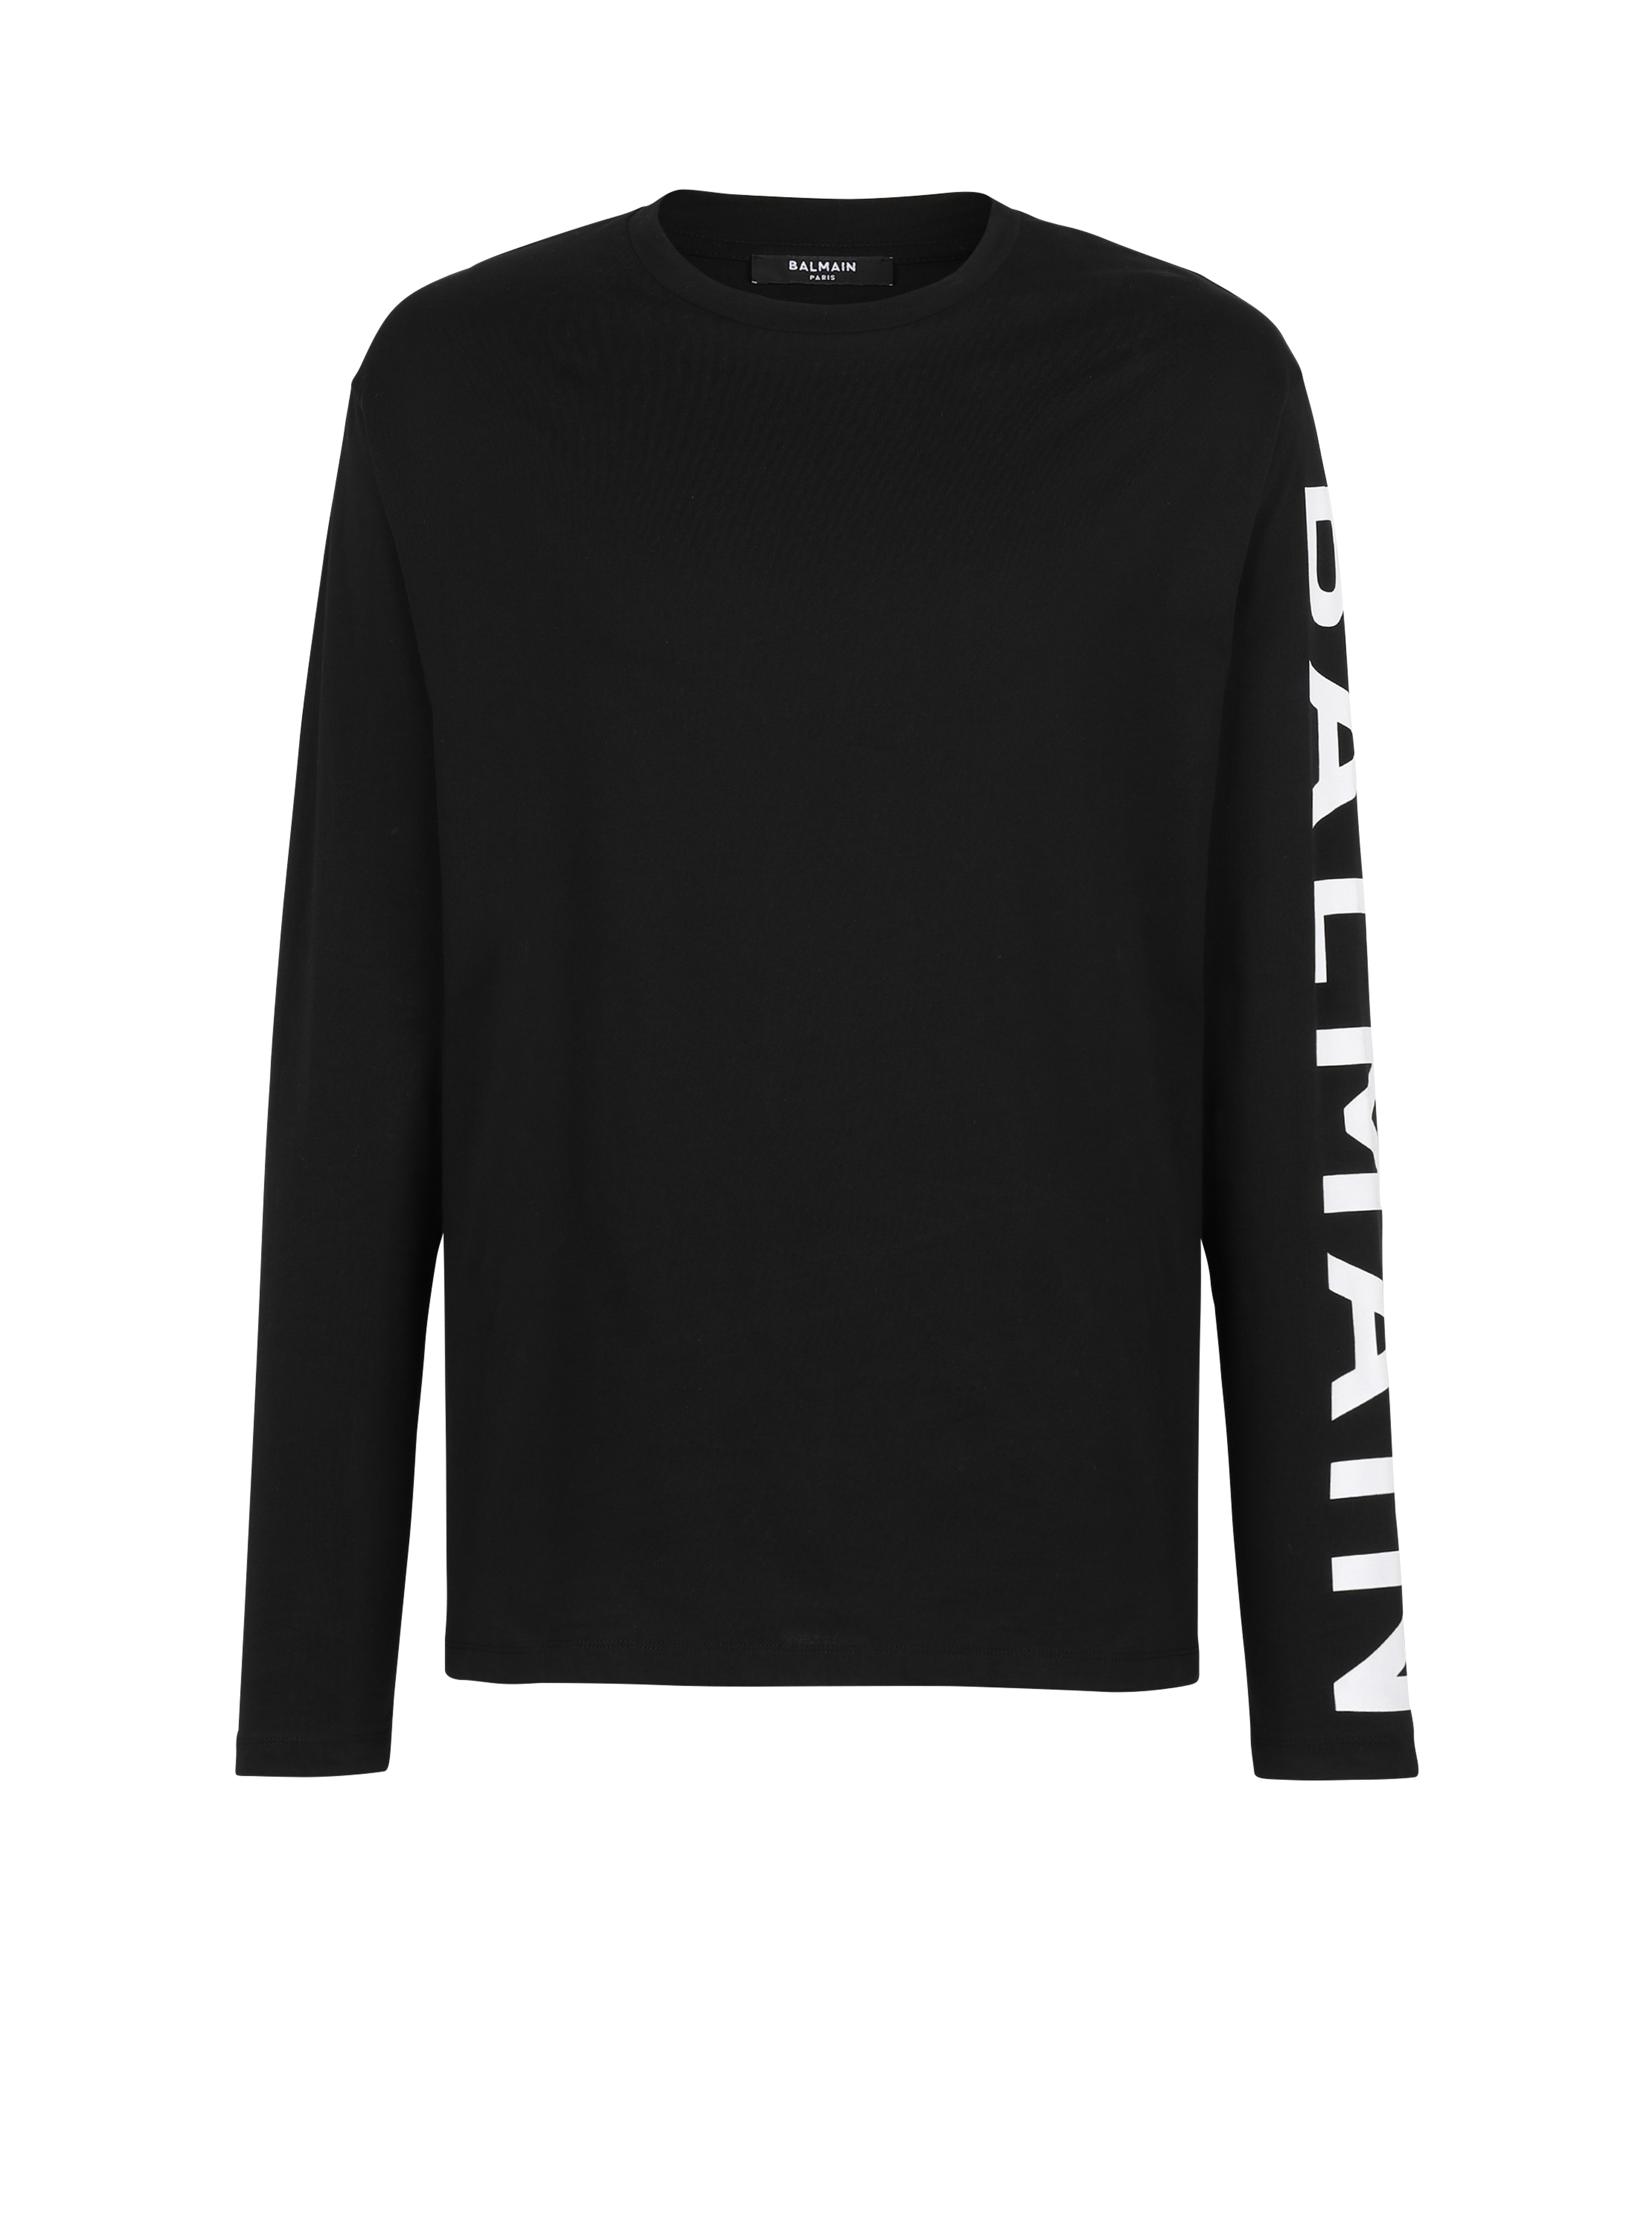 T-shirt in cotone a maniche lunghe con logo Balmain sulla manica, nero